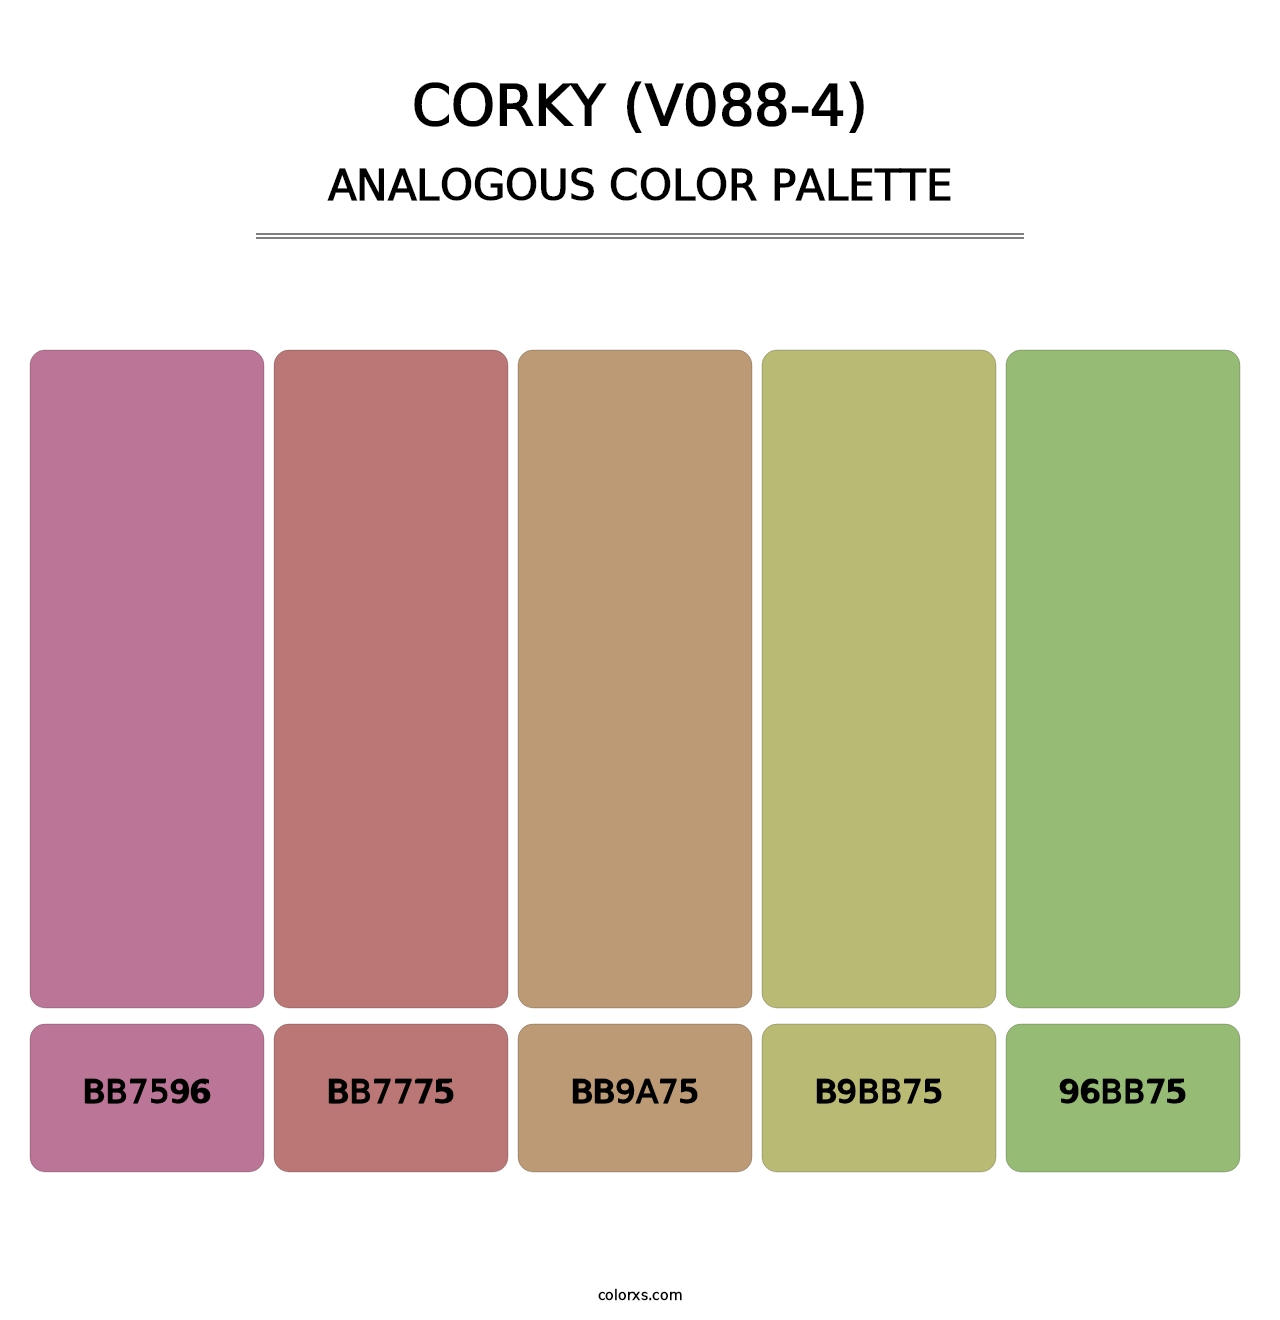 Corky (V088-4) - Analogous Color Palette